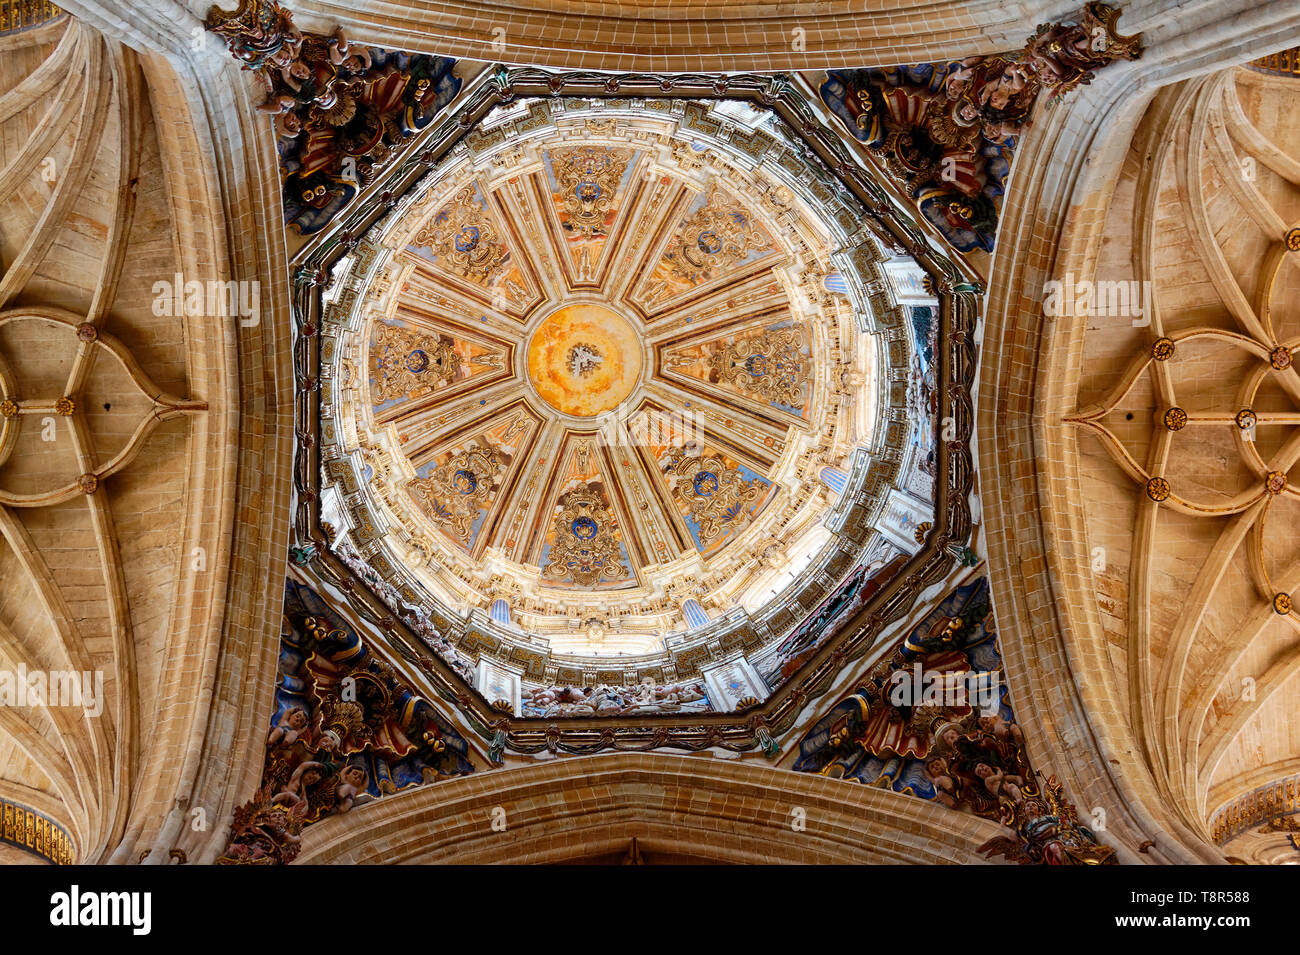 Kathedrale von Salamanca, Interieur, Dome, komplizierte, 12-17 Jahrhundert, Katholischen, alte religiöse Gebäude, reich verzierte, UNESCO-Welterbe; Europa; Salamanca; Spanien; Spr Stockfoto